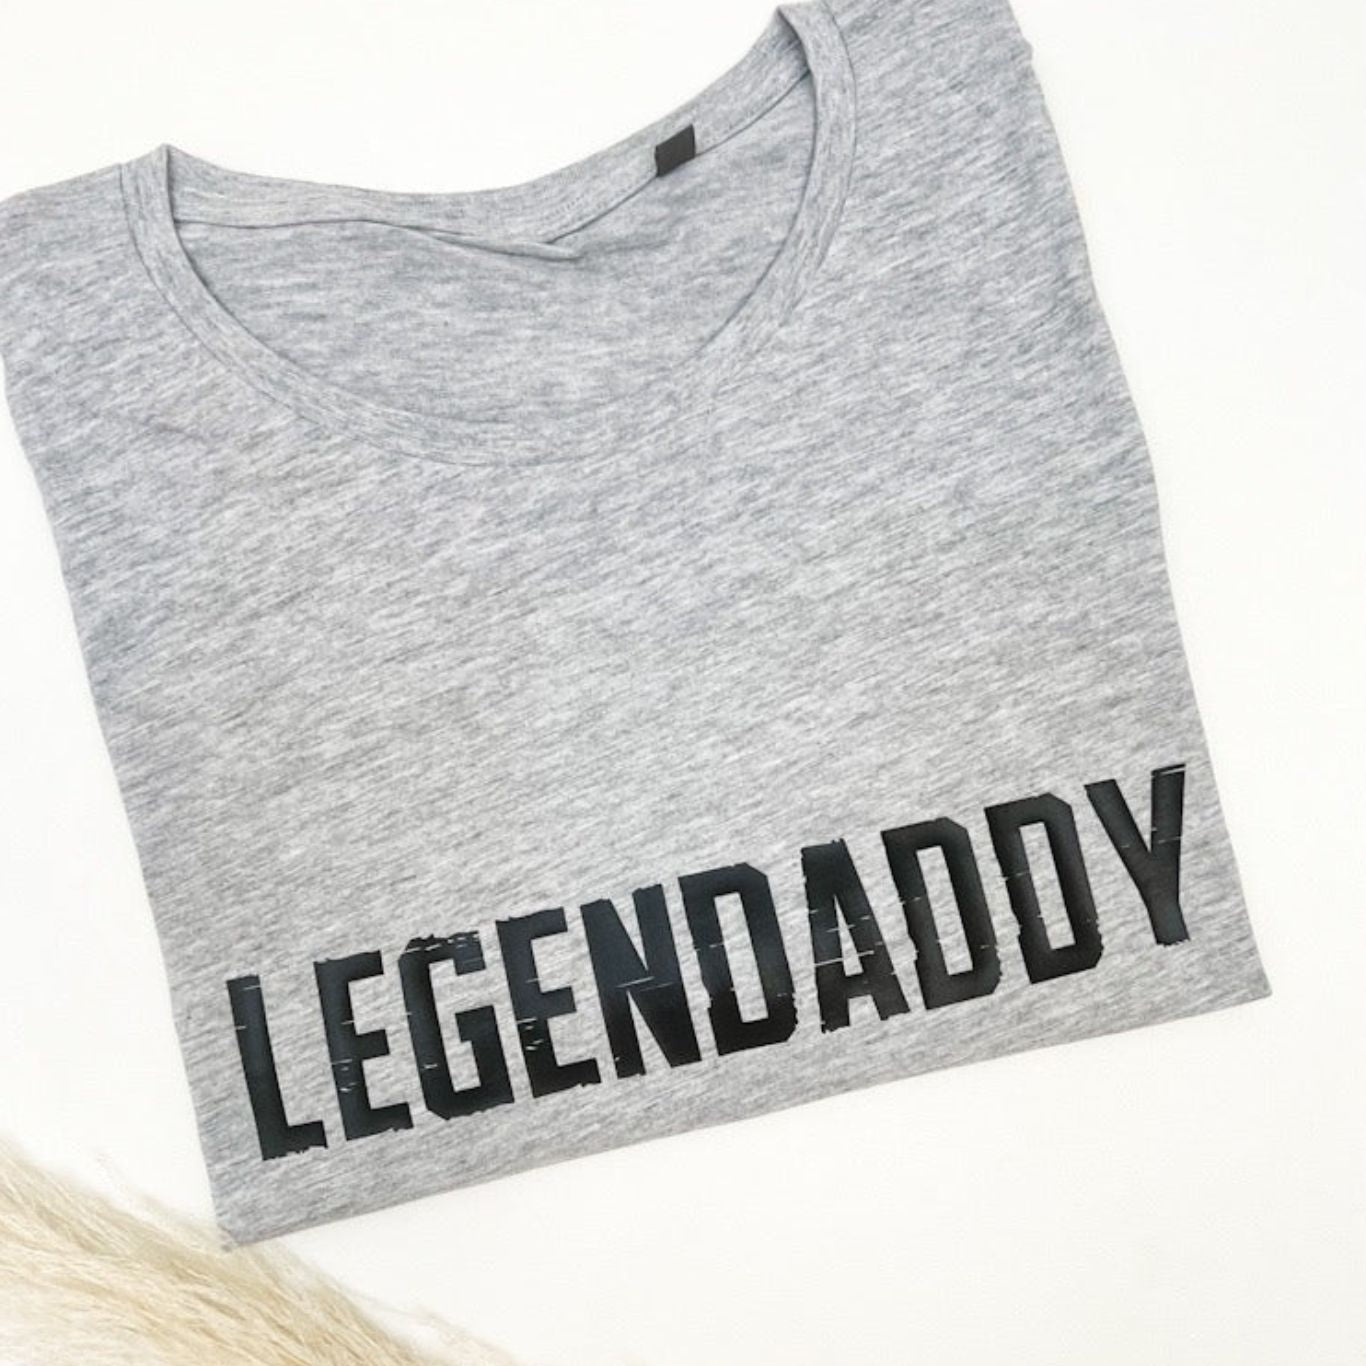 T-Shirt LEGENDADDY personalisiert das doppelte Plottchen®